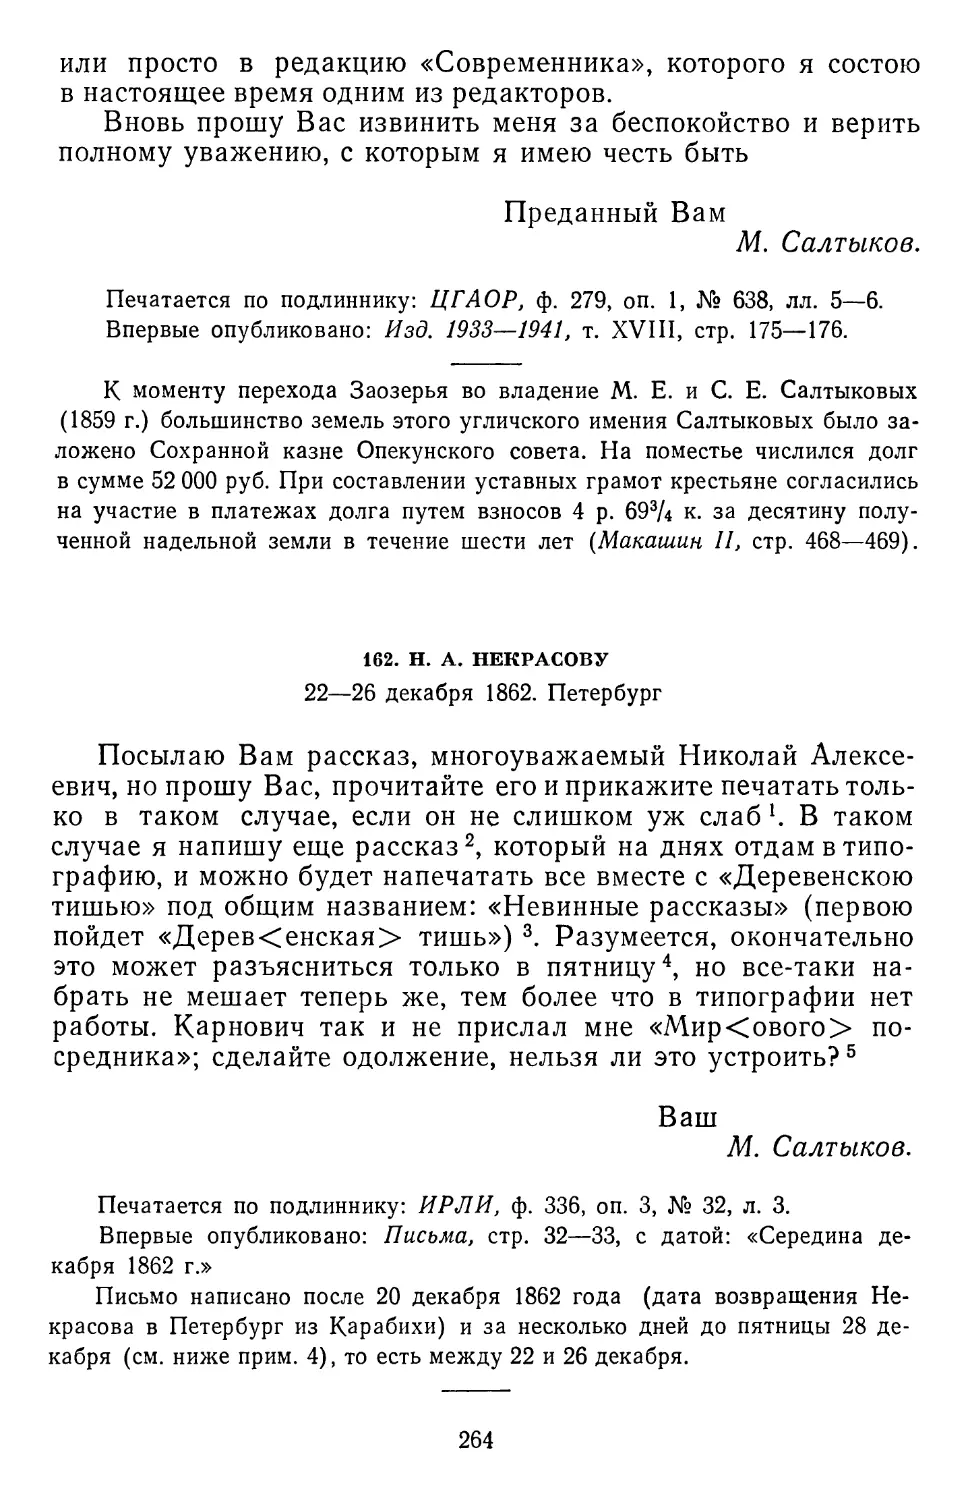 162.Н. А. Некрасову. 22—26 декабря 1862. Петербург